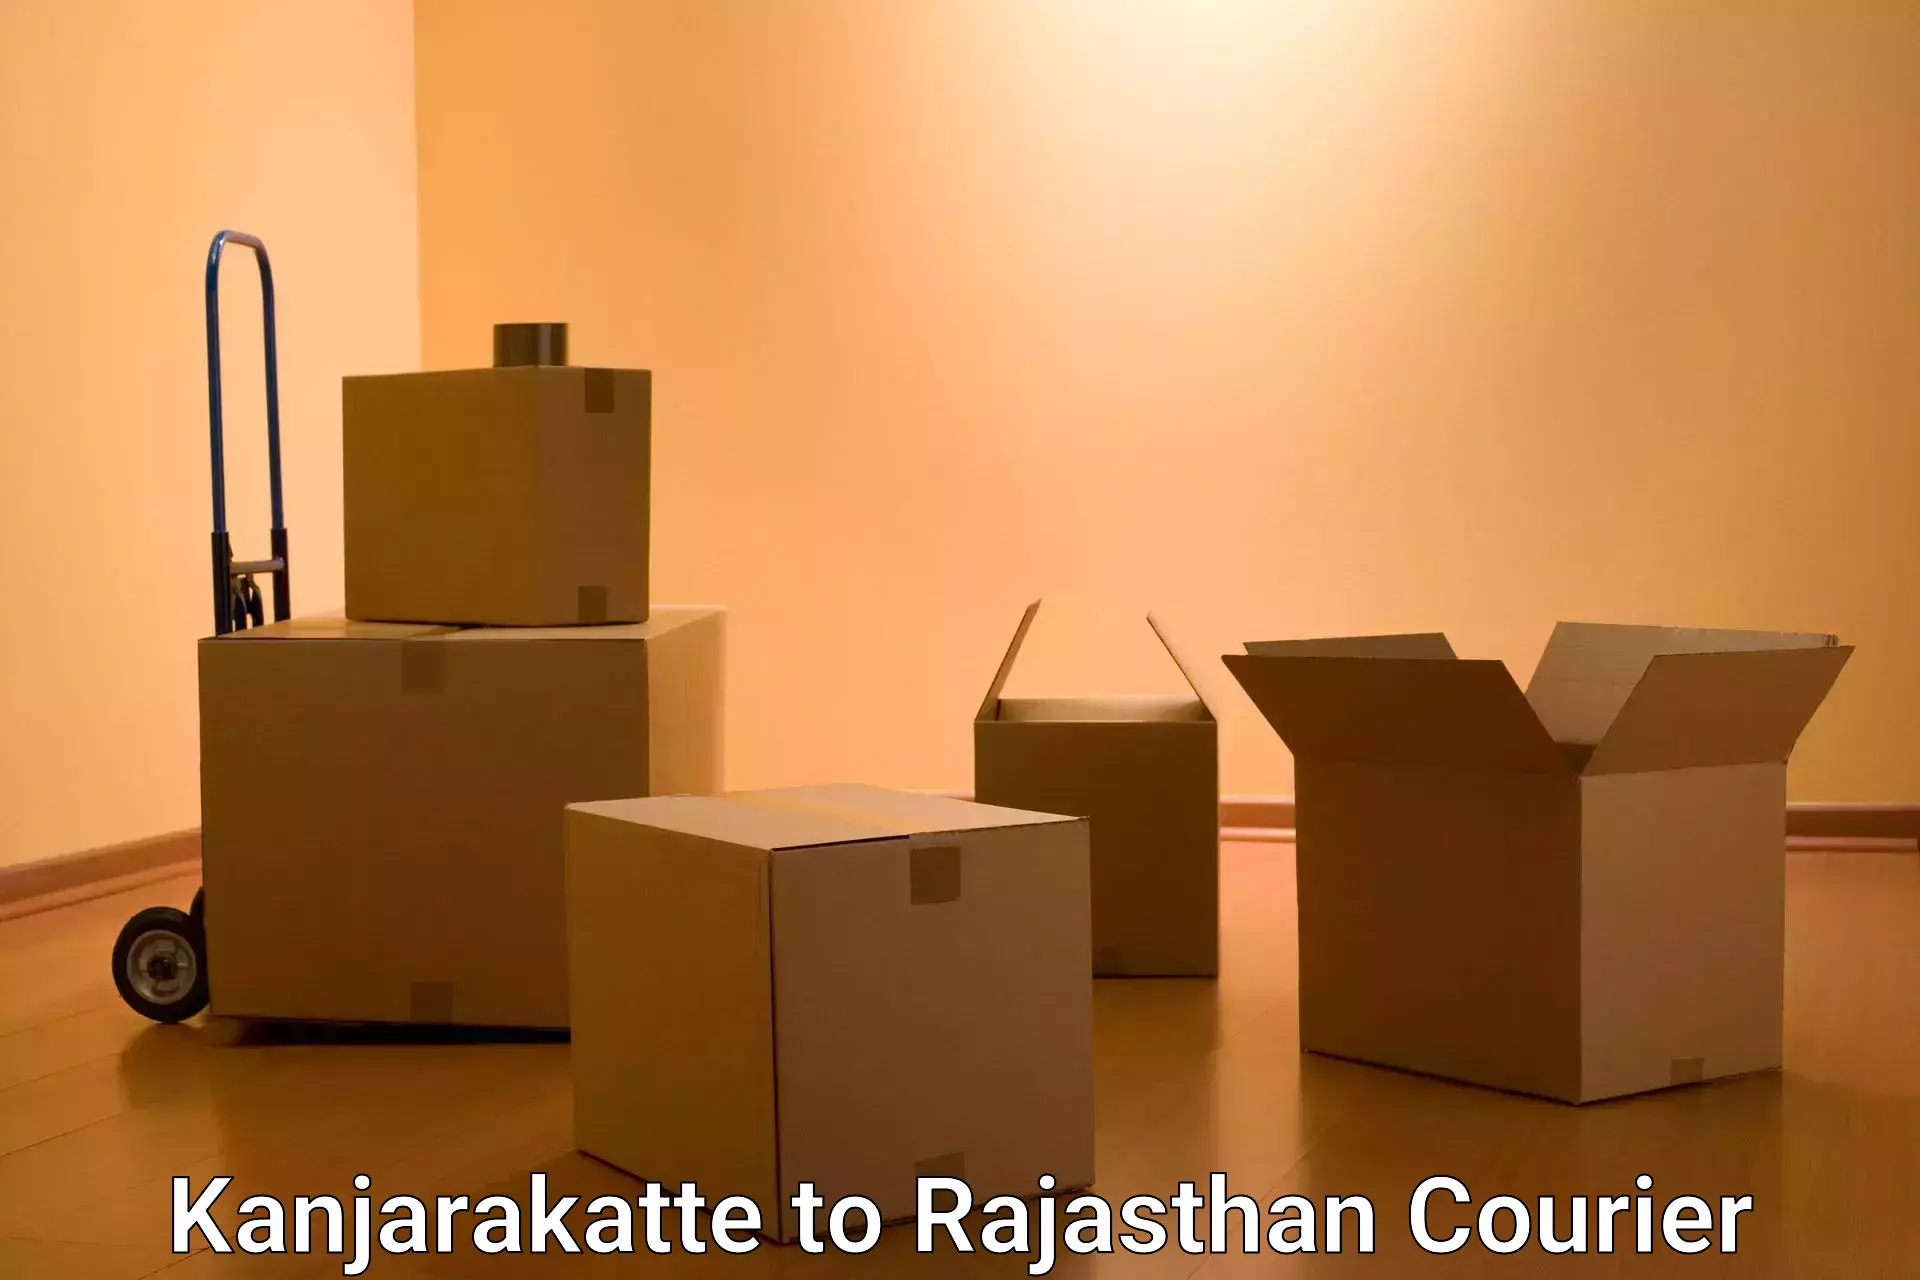 International courier rates Kanjarakatte to Rajasthan